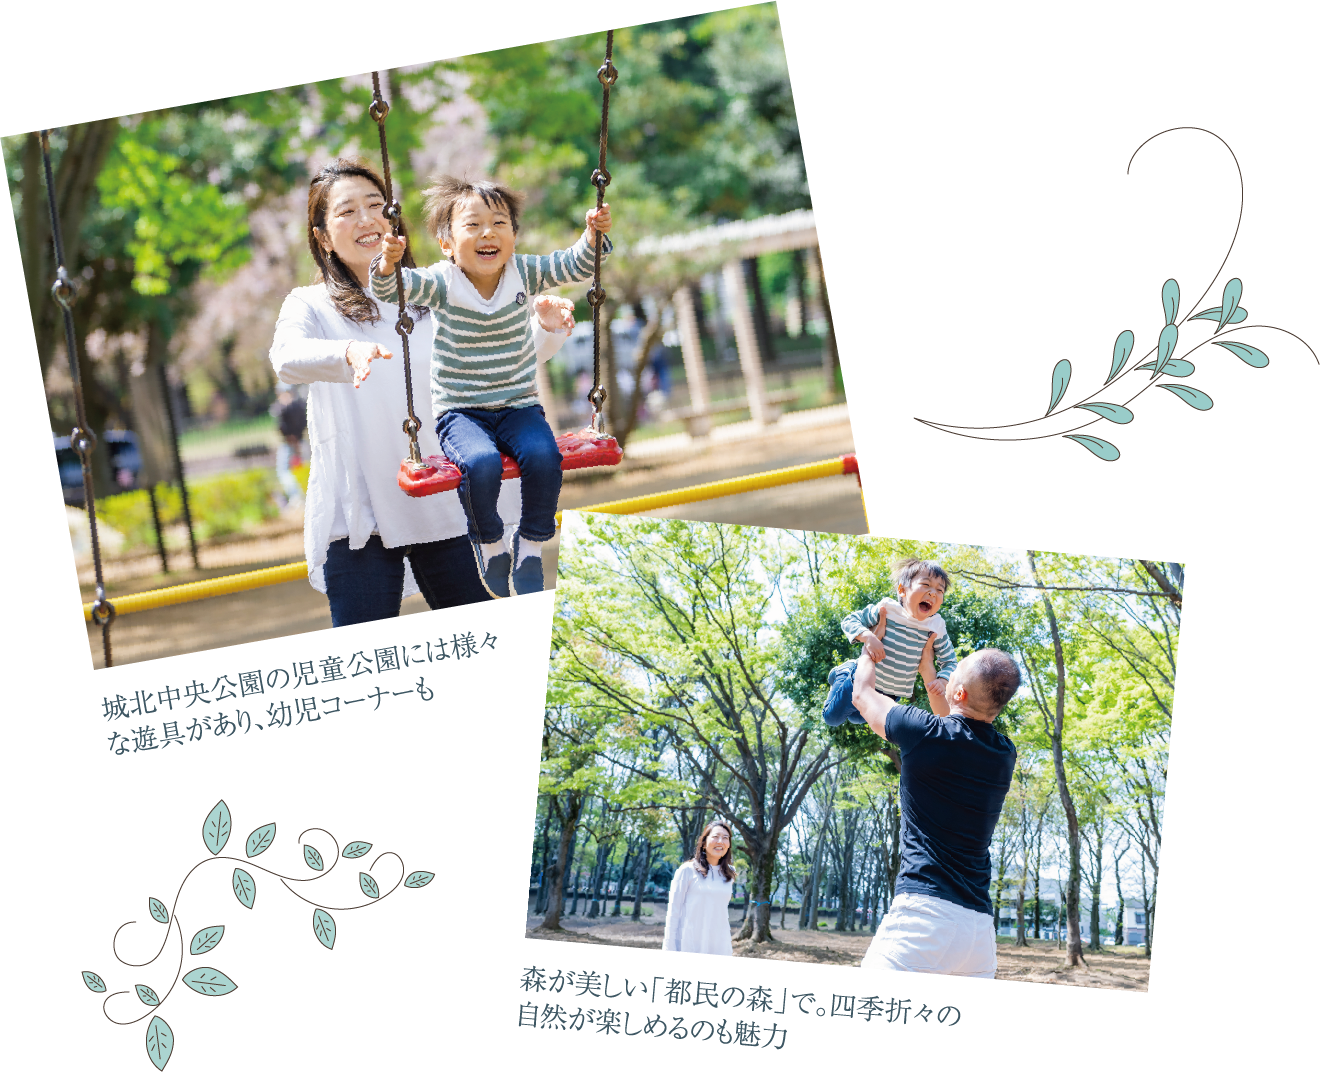 城北中央公園の児童公園には様々な遊具があり、幼児コーナーも森が美しい「都民の森」で。四季折々の自然が楽しめるのも魅力